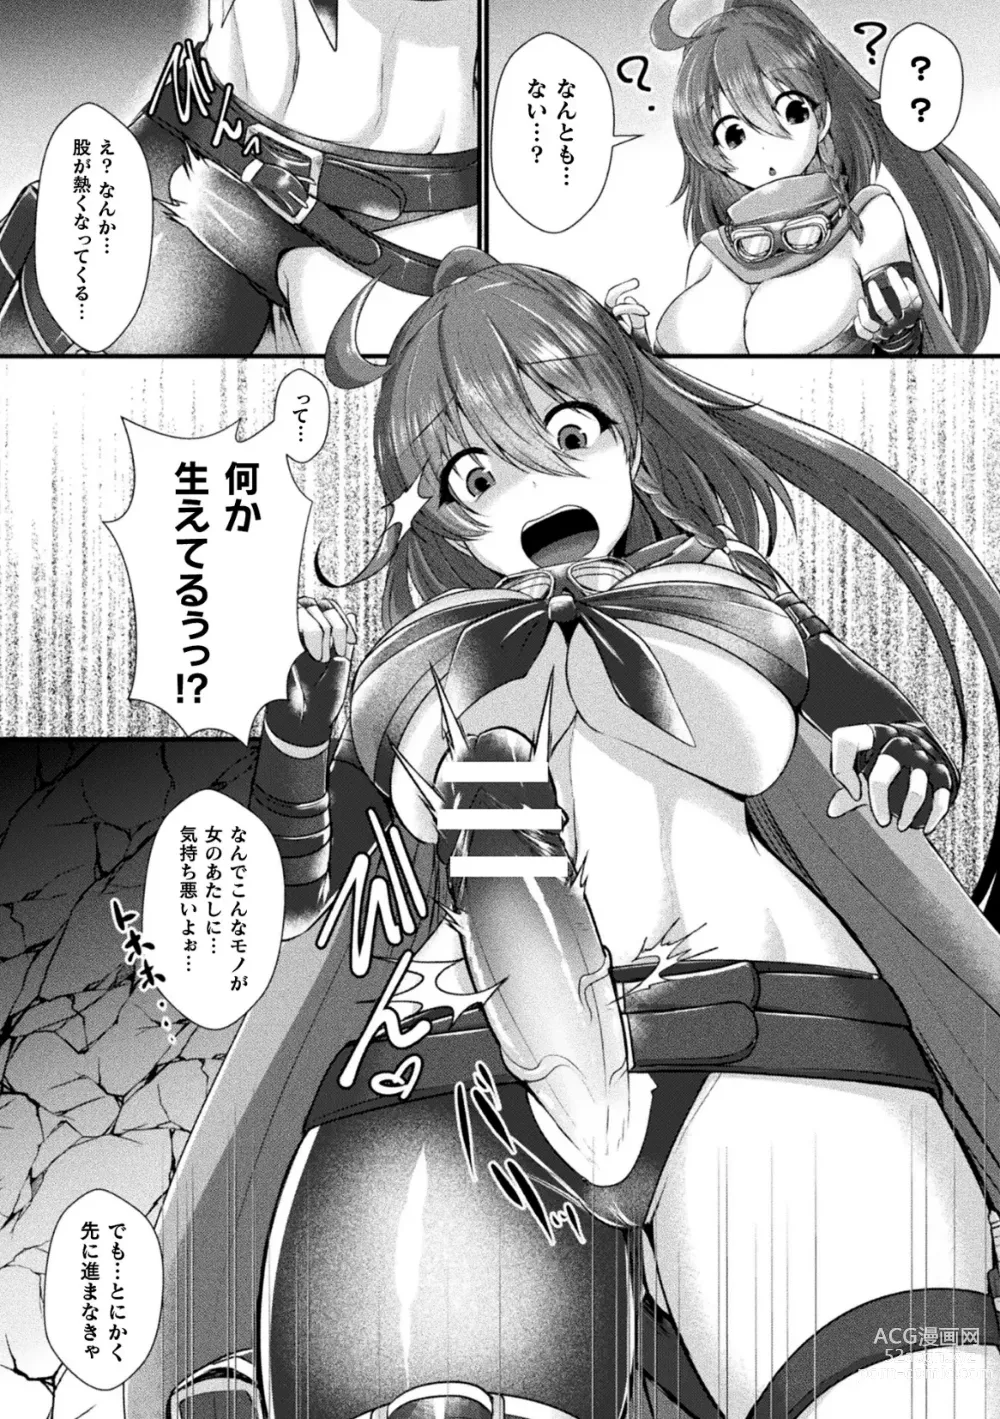 Page 6 of manga 2D Comic Magazine Futanari Kabe Sao Kabe Shiri Futanari Heroine Sakusei Iki Jigoku! Vol. 2